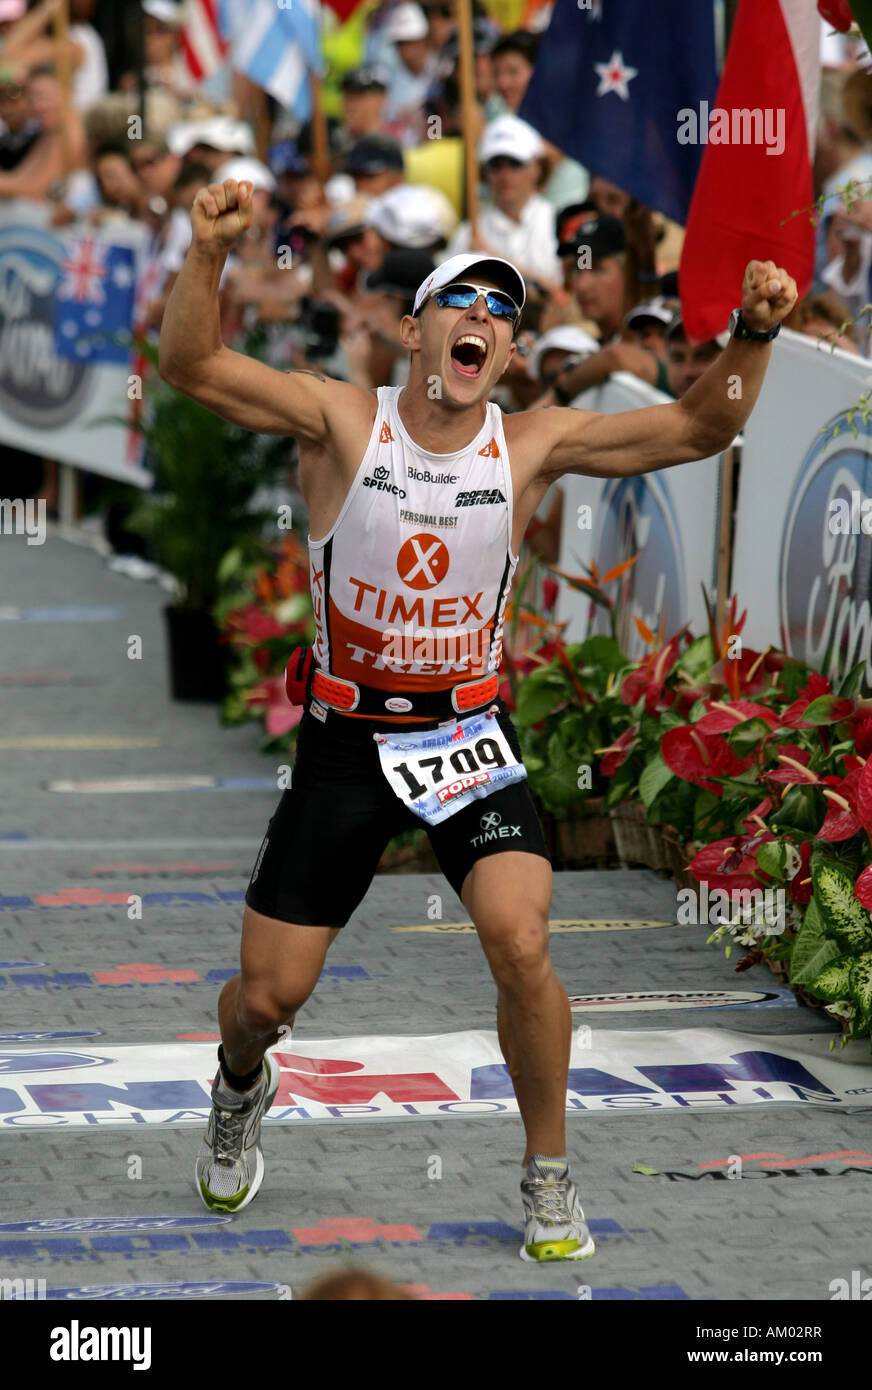 Alex Triathlet Mroszczk-McDonald (Estados Unidos) durante el Campeonato Mundial Ironman en Kailua-Kona Hawaii EE.UU. Foto de stock